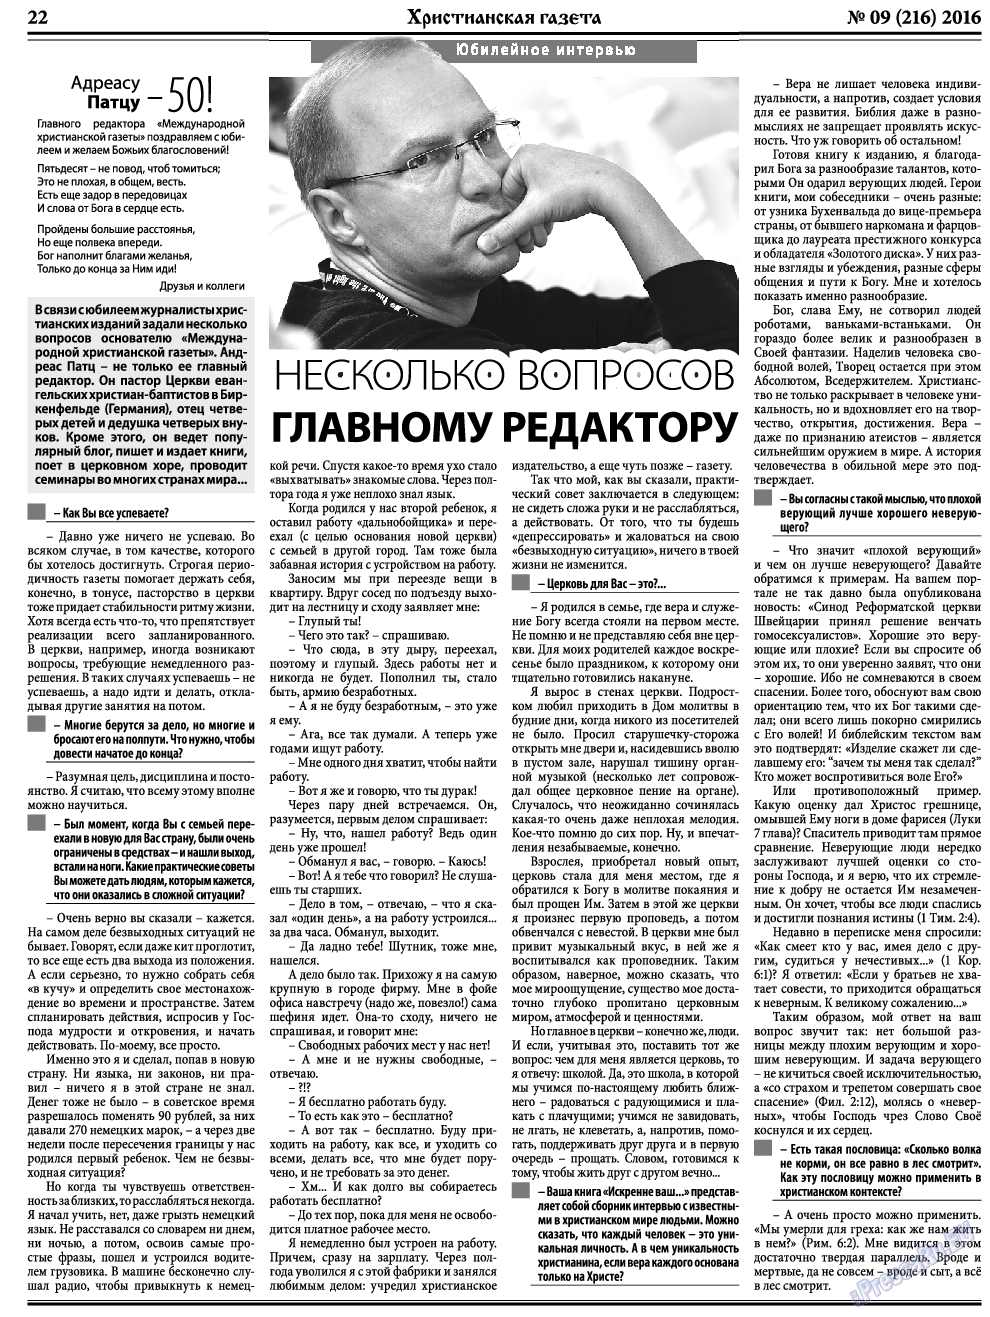 Христианская газета, газета. 2016 №9 стр.30